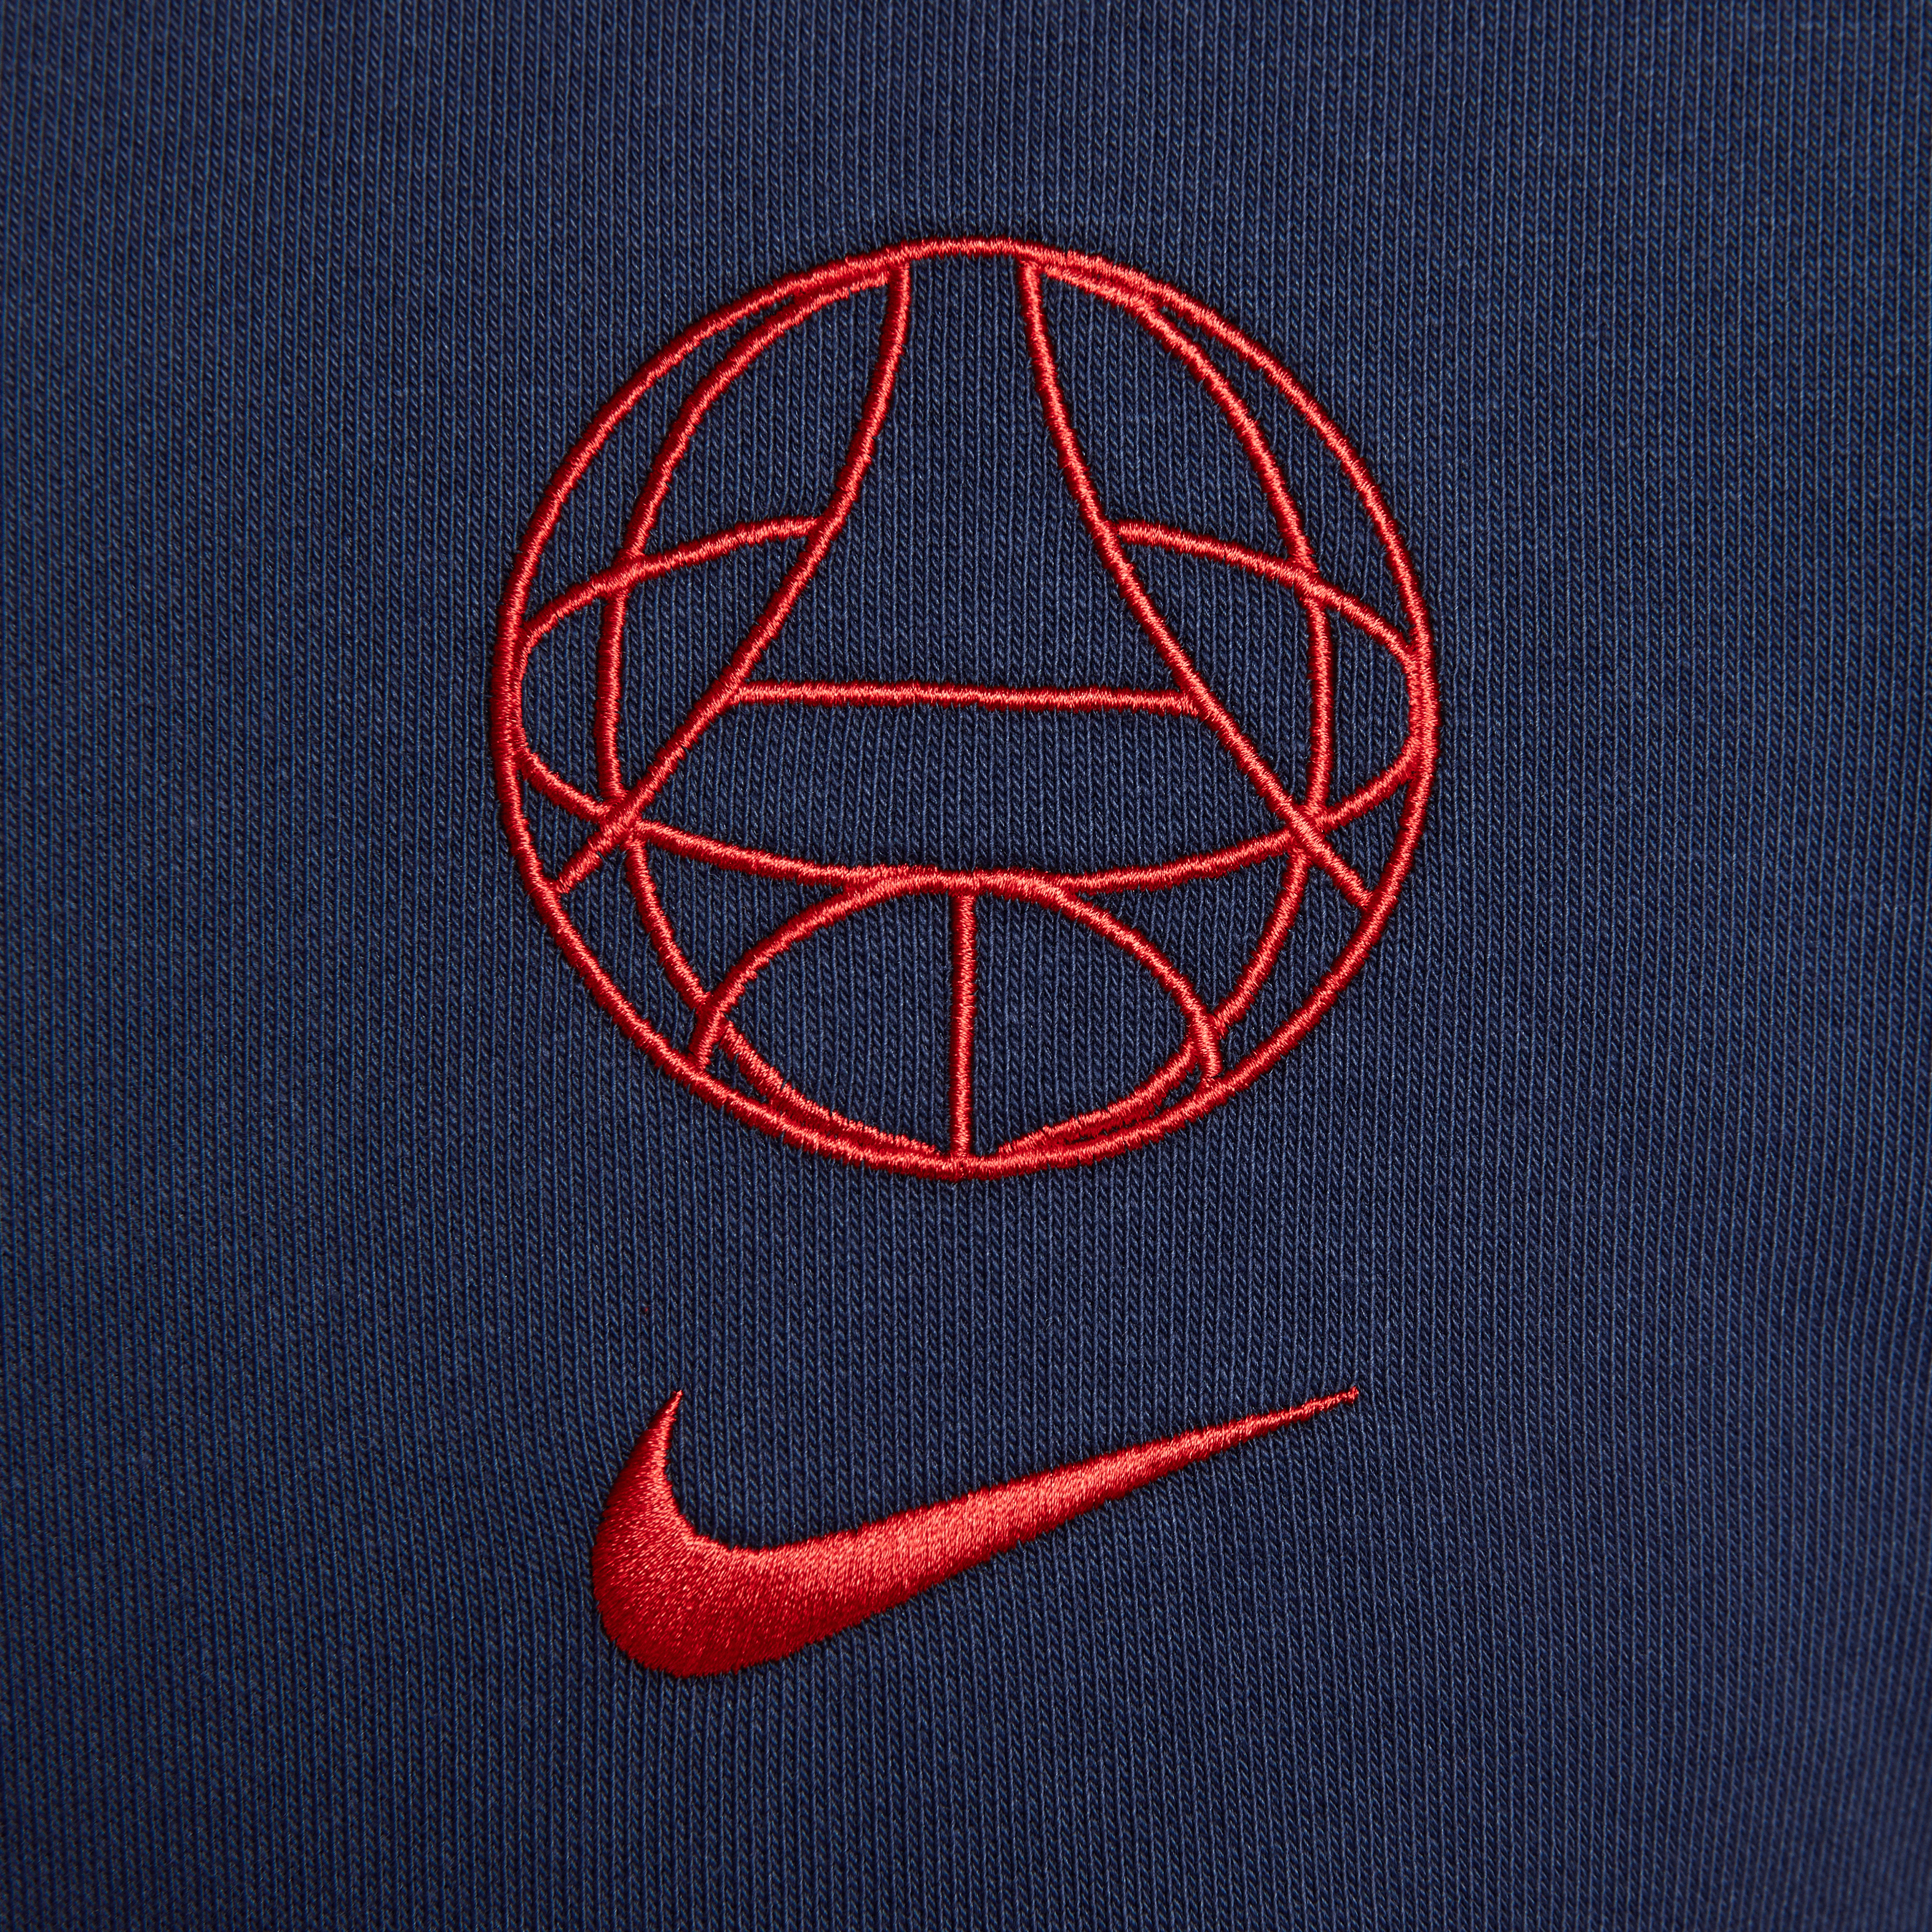 Nike Men's Paris Saint-Germain Hoodie-Navy/Red